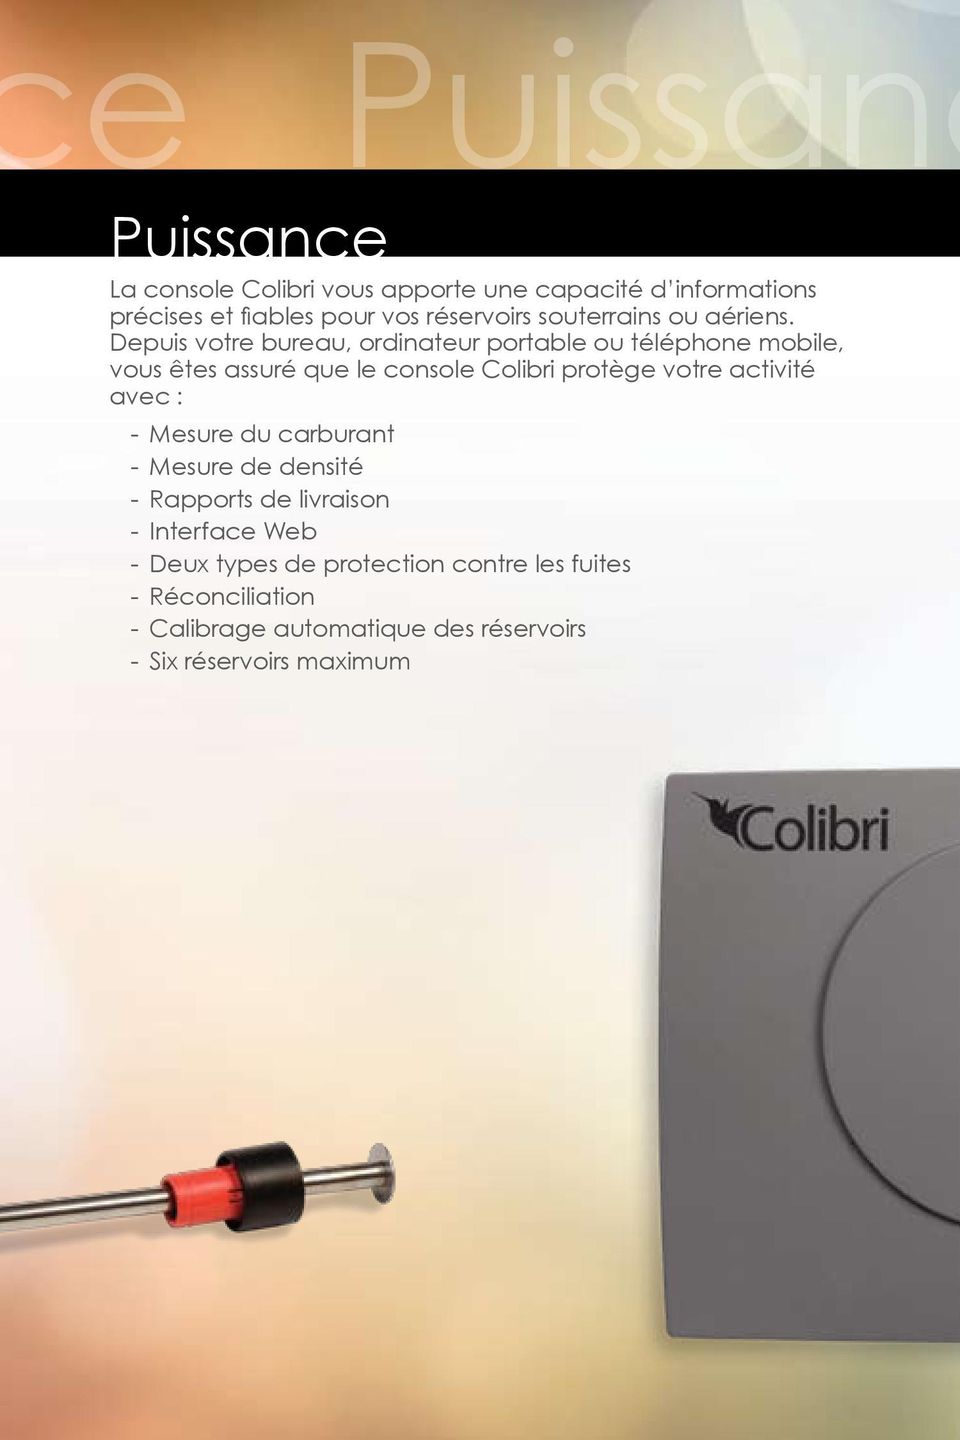 Depuis votre bureau, ordinateur portable ou téléphone mobile, vous êtes assuré que le console Colibri protège votre